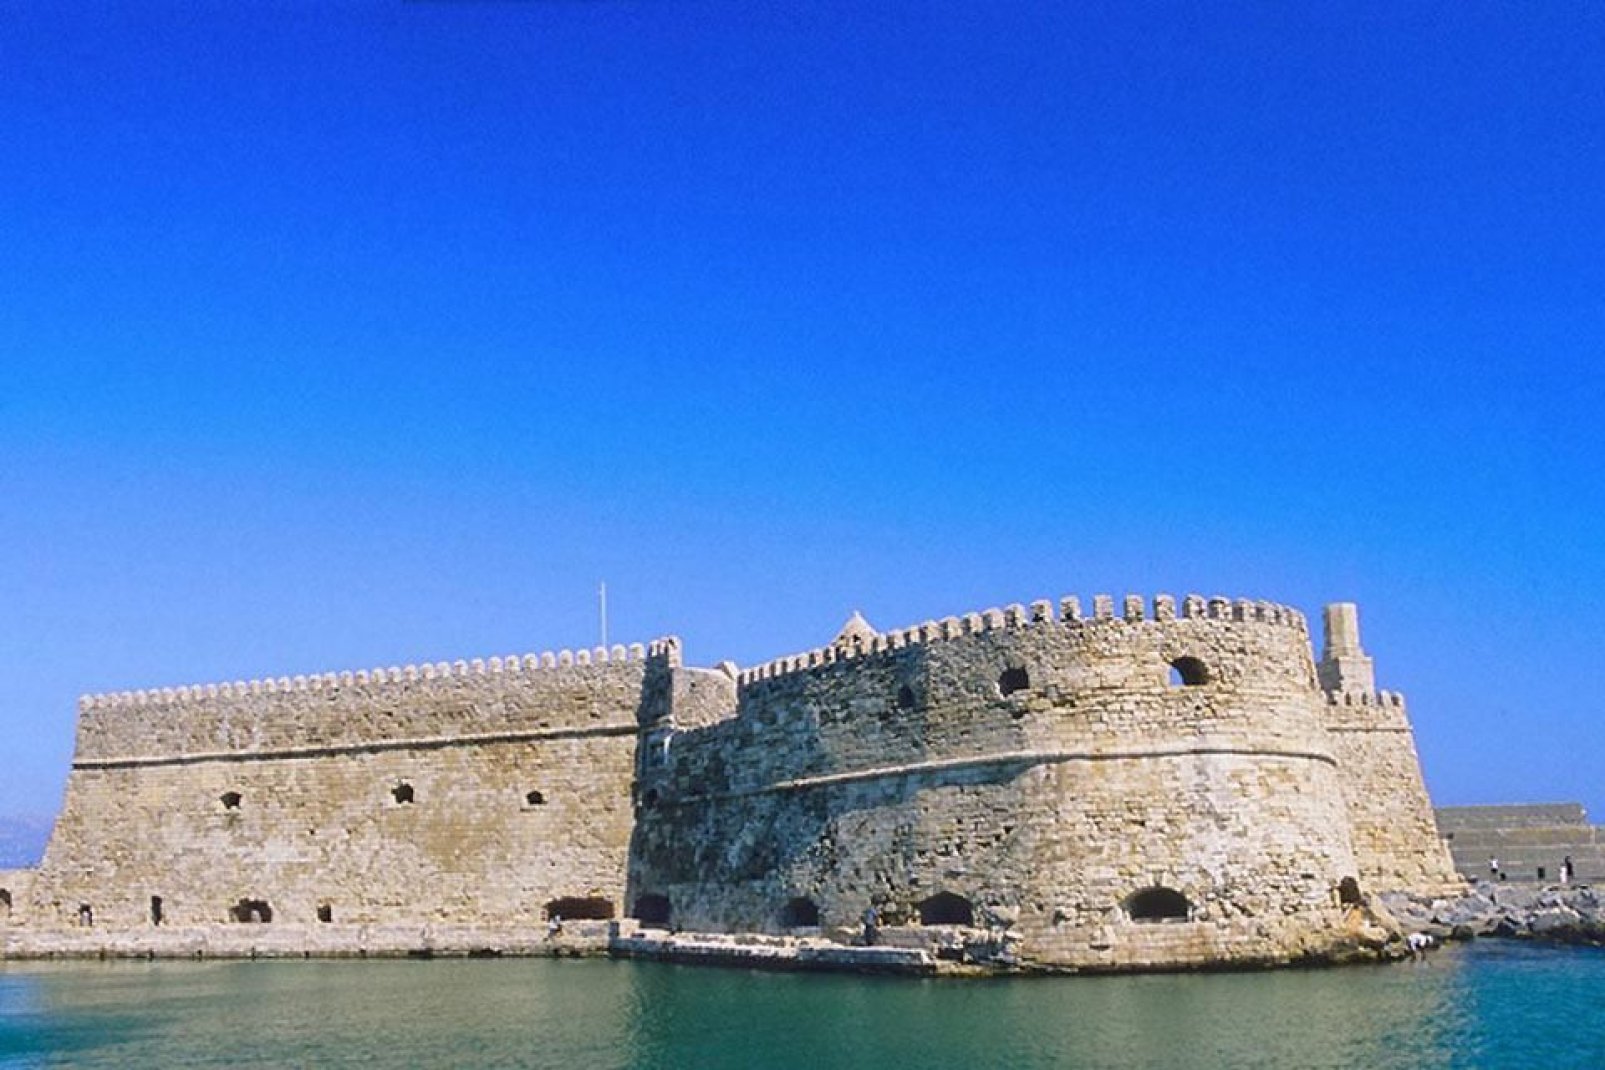 Dans l'histoire tumultueuse de la ville, le Fort vénitien rappelle l'invasion vénitienne au XIIIème siècle.